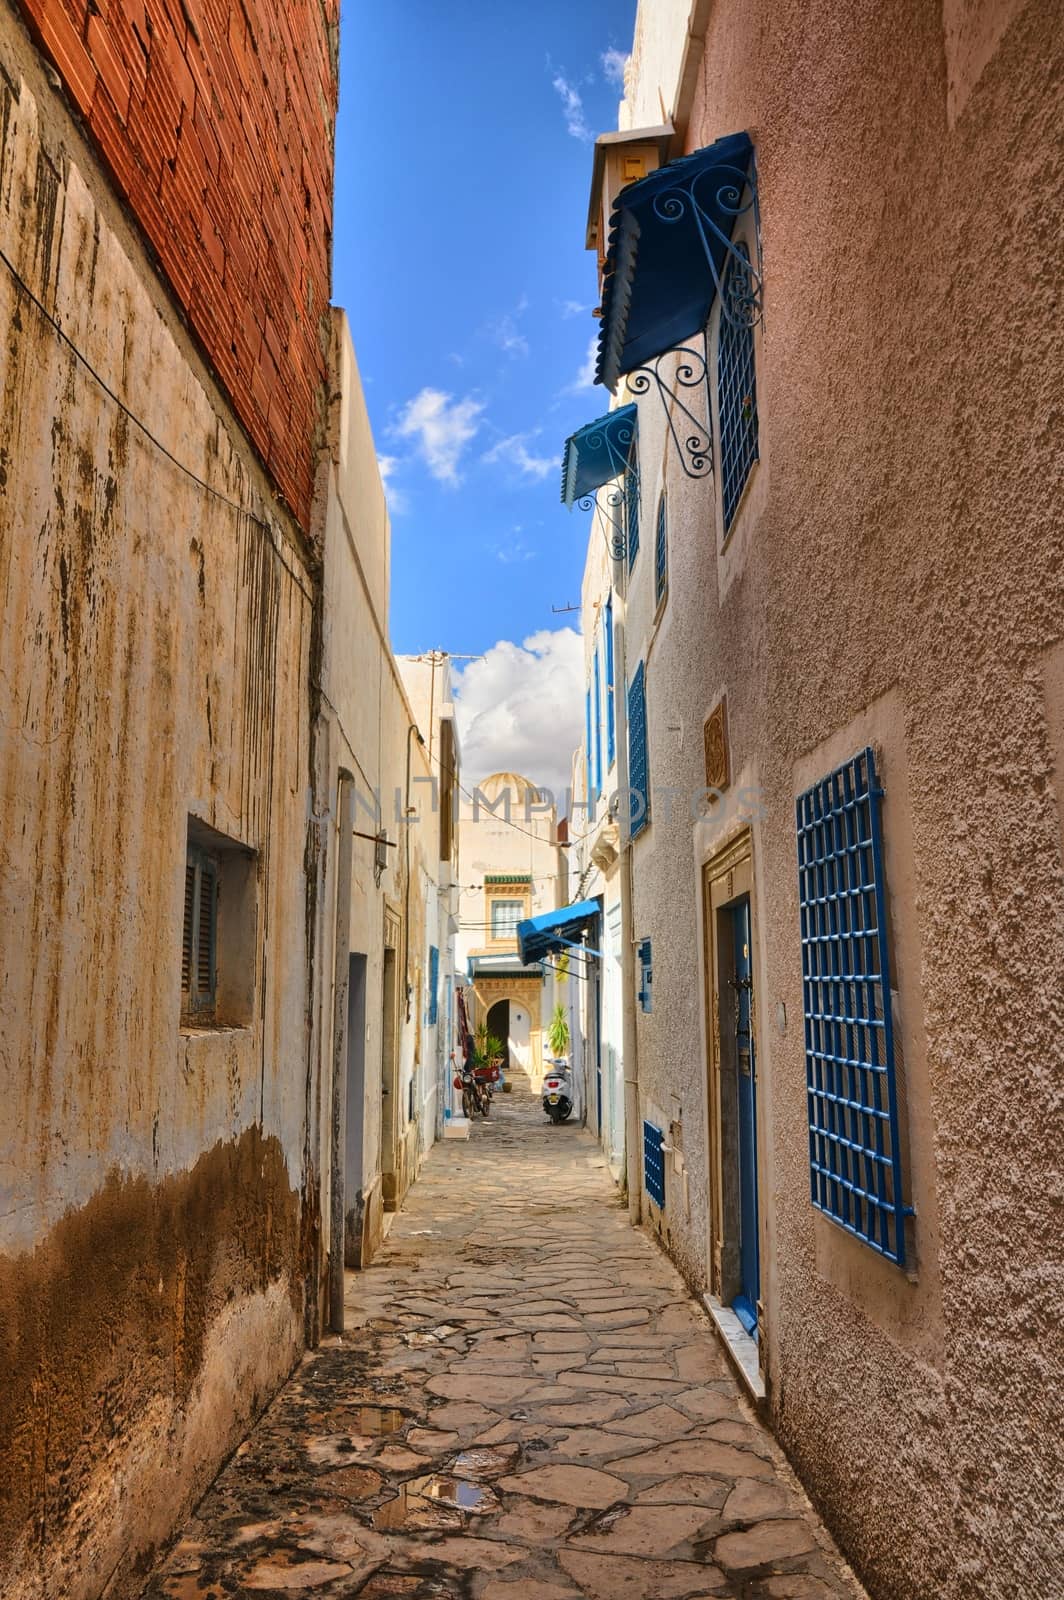 Narrow street of ancient Medina, Hammamet, Tunisia, Mediterranea by Eagle2308